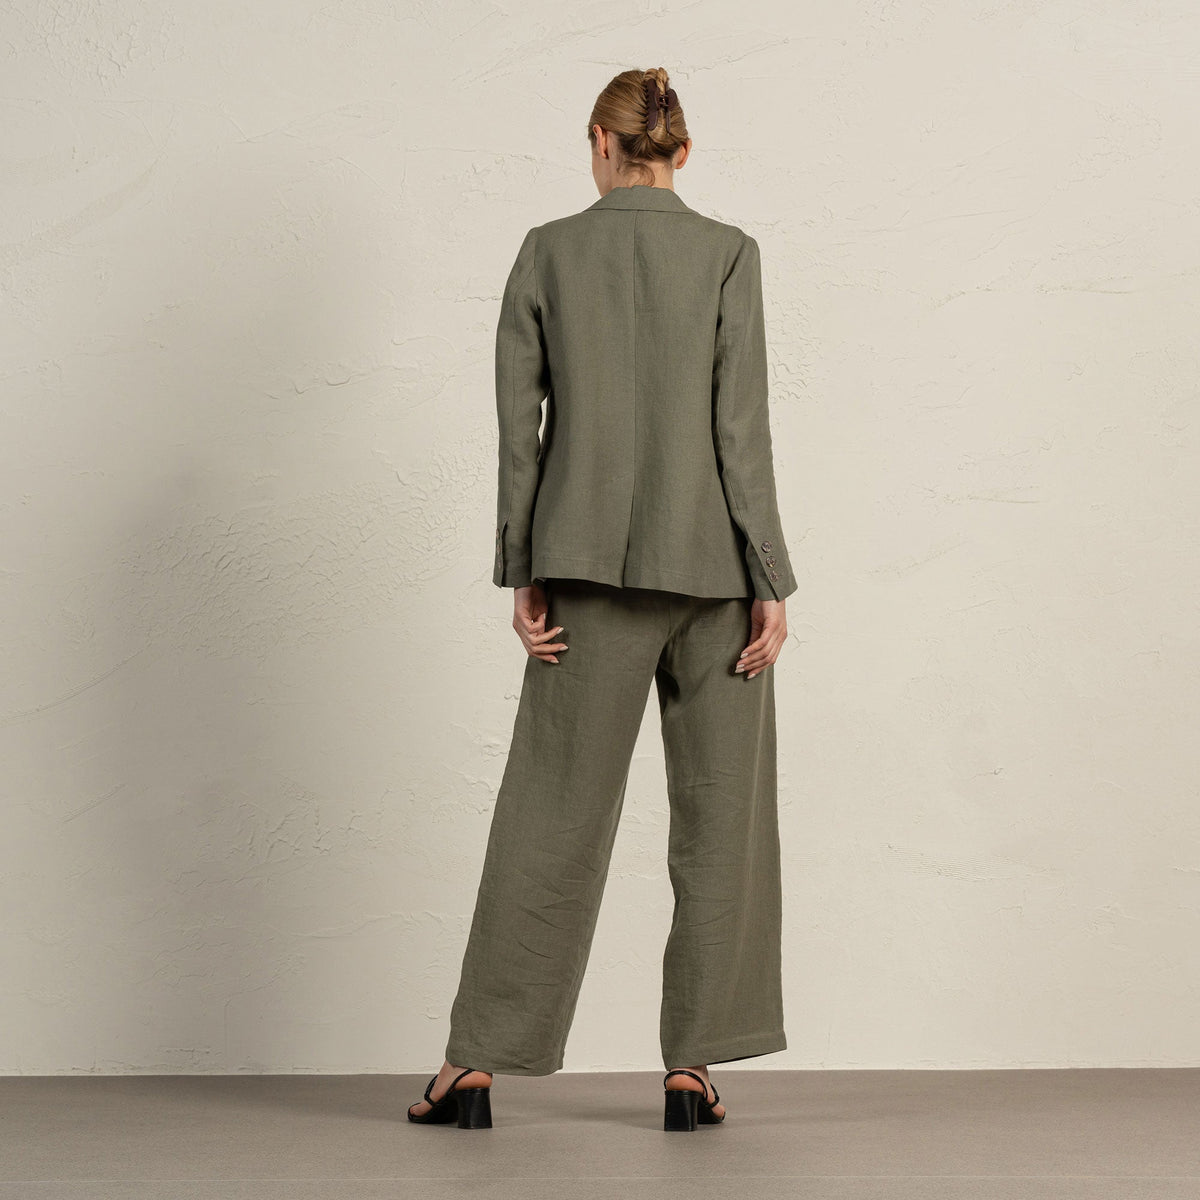 MENIQUE 100% Linen Blazer, Vest & Pants 3-Piece